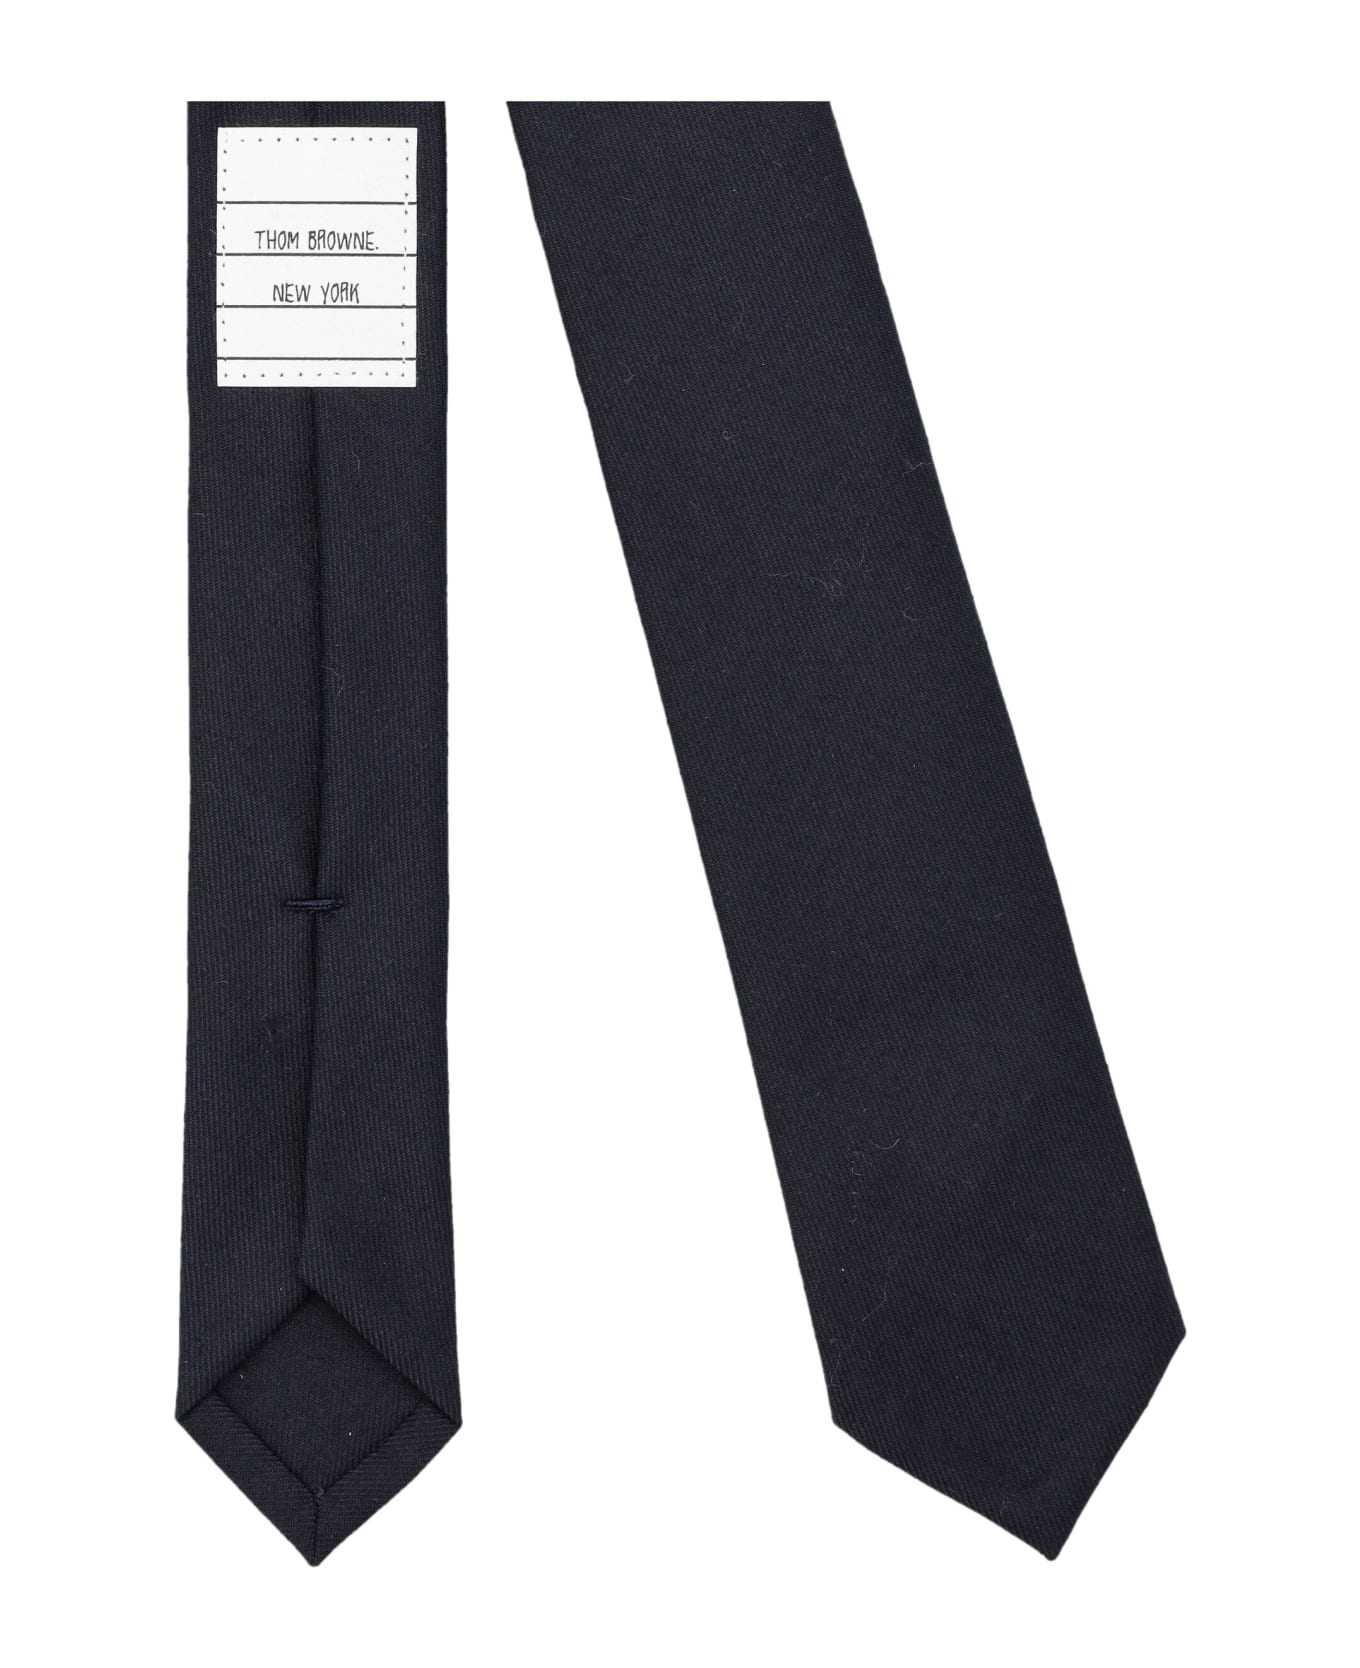 Thom Browne Super 120's Twill Necktie - NAVY ネクタイ